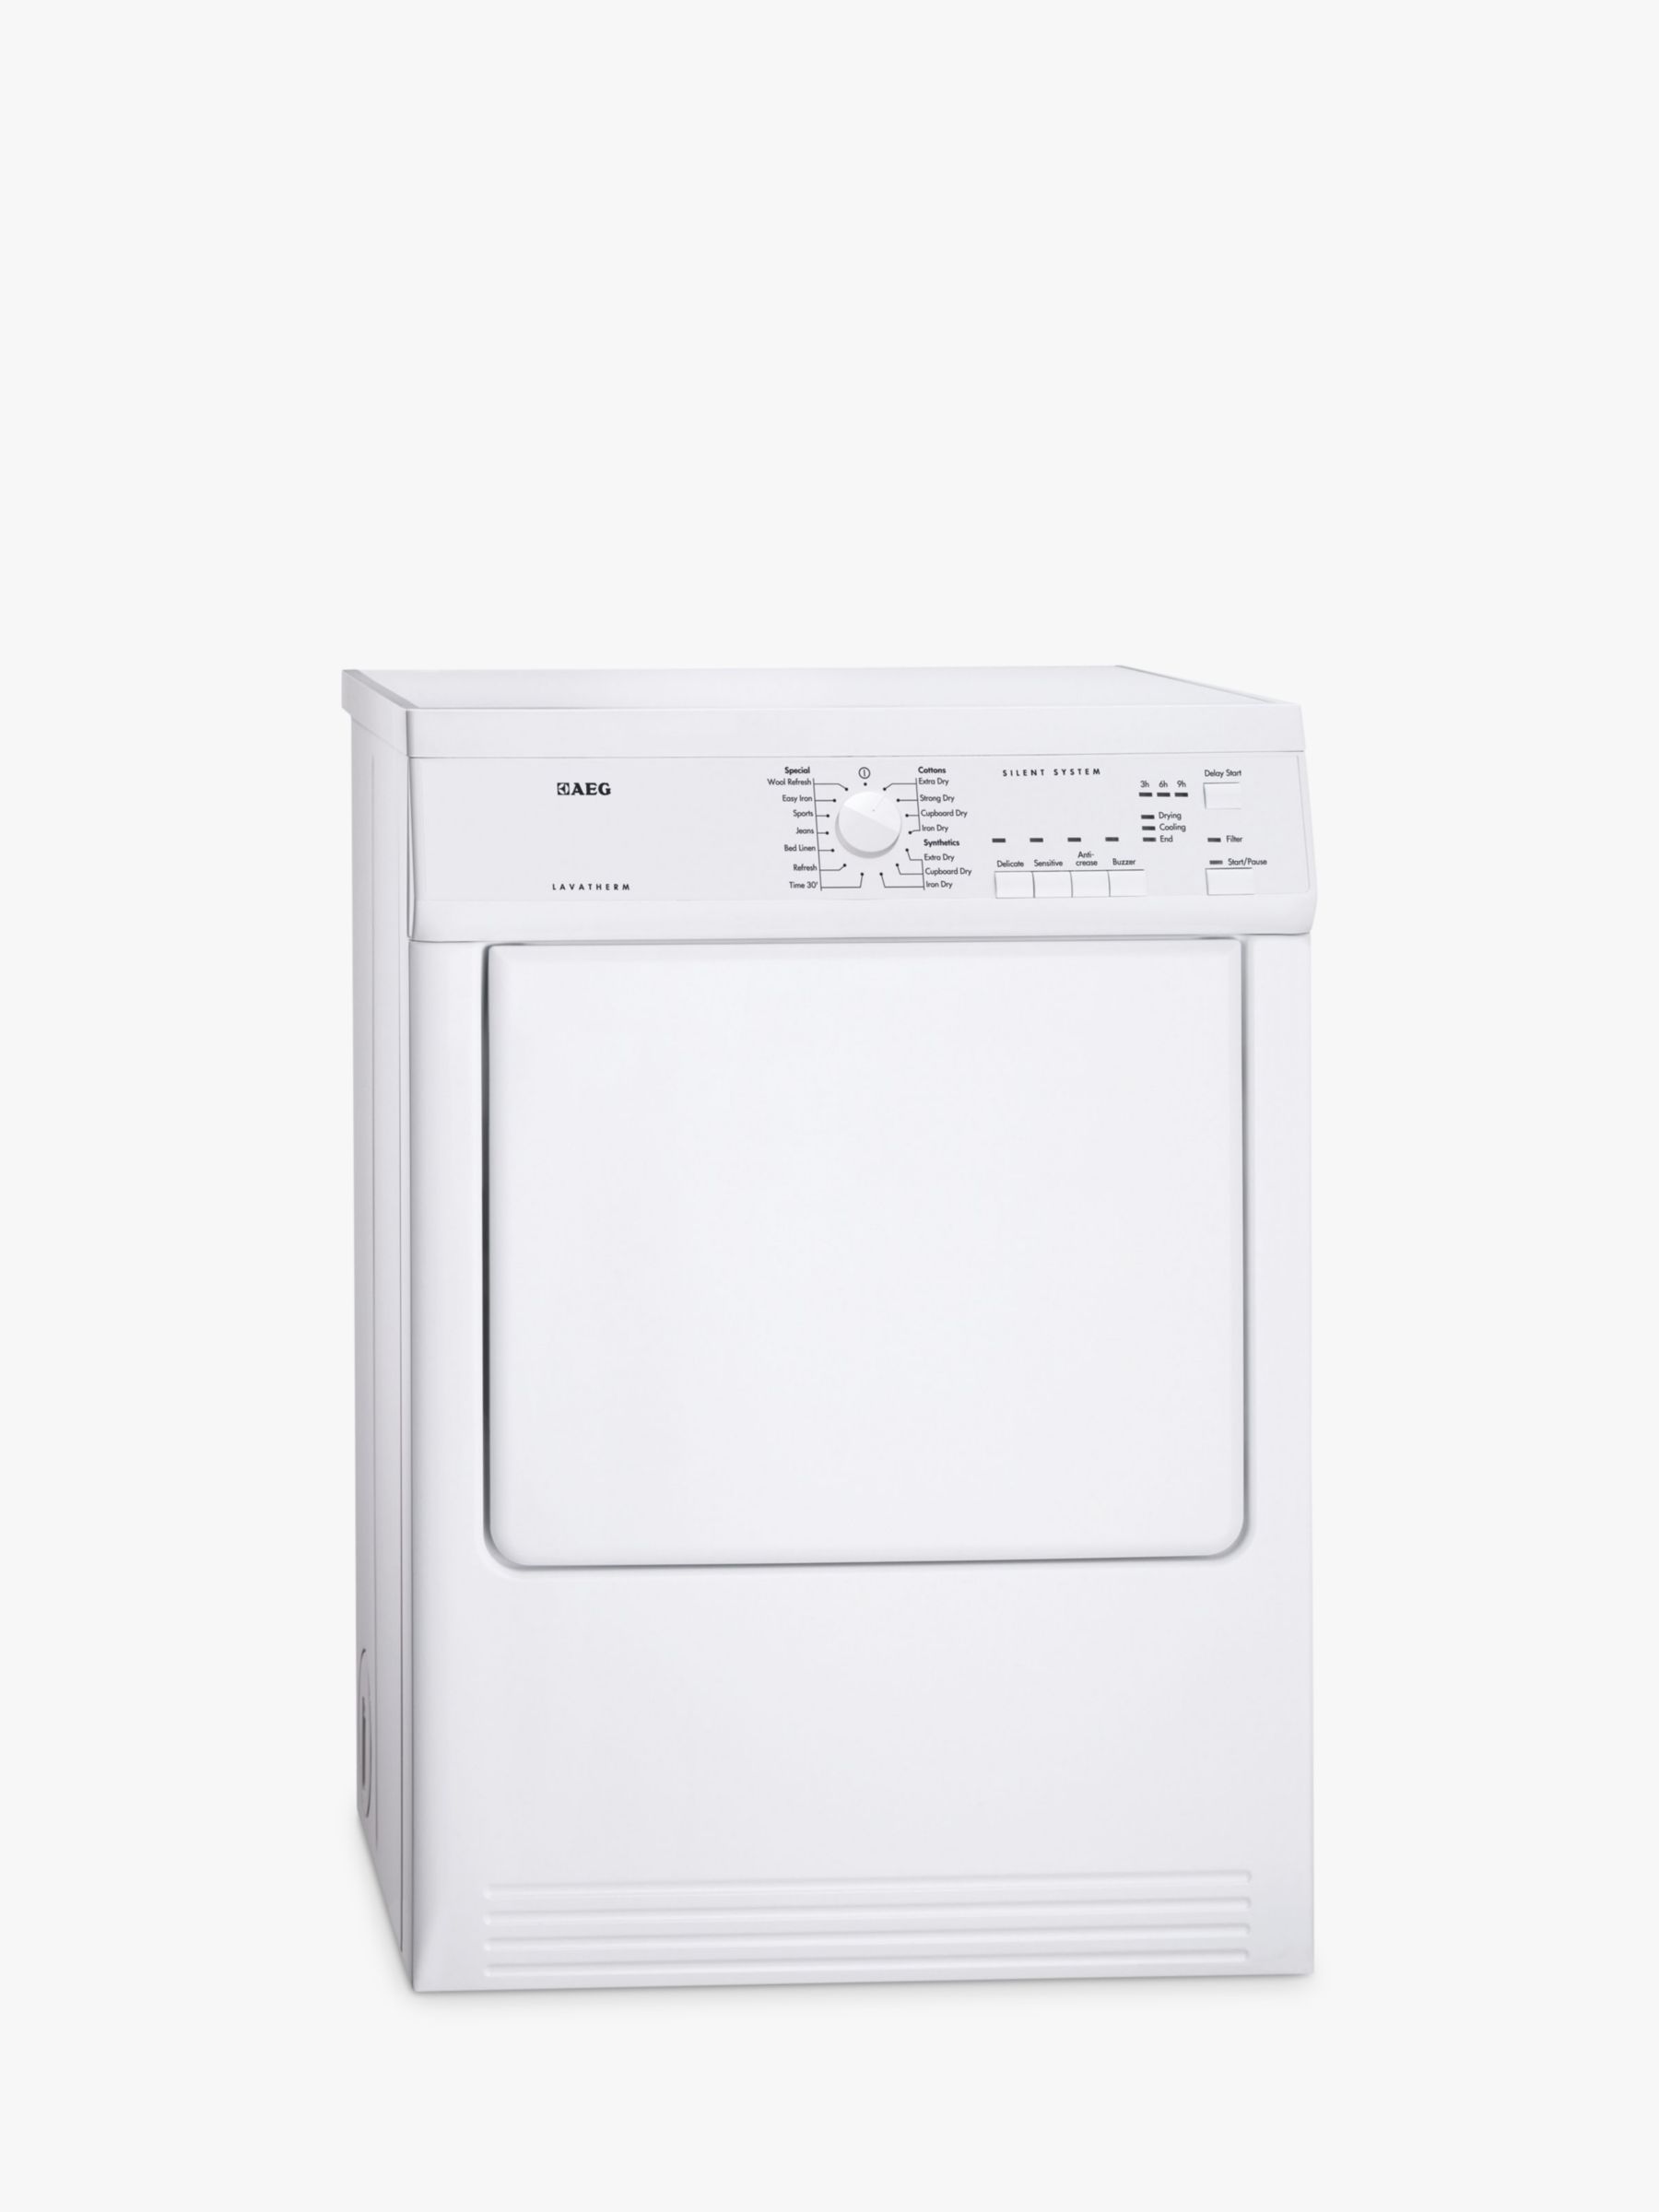 AEG T65170AV Vented Tumble Dryer, 7kg Load, C Energy Rating, White